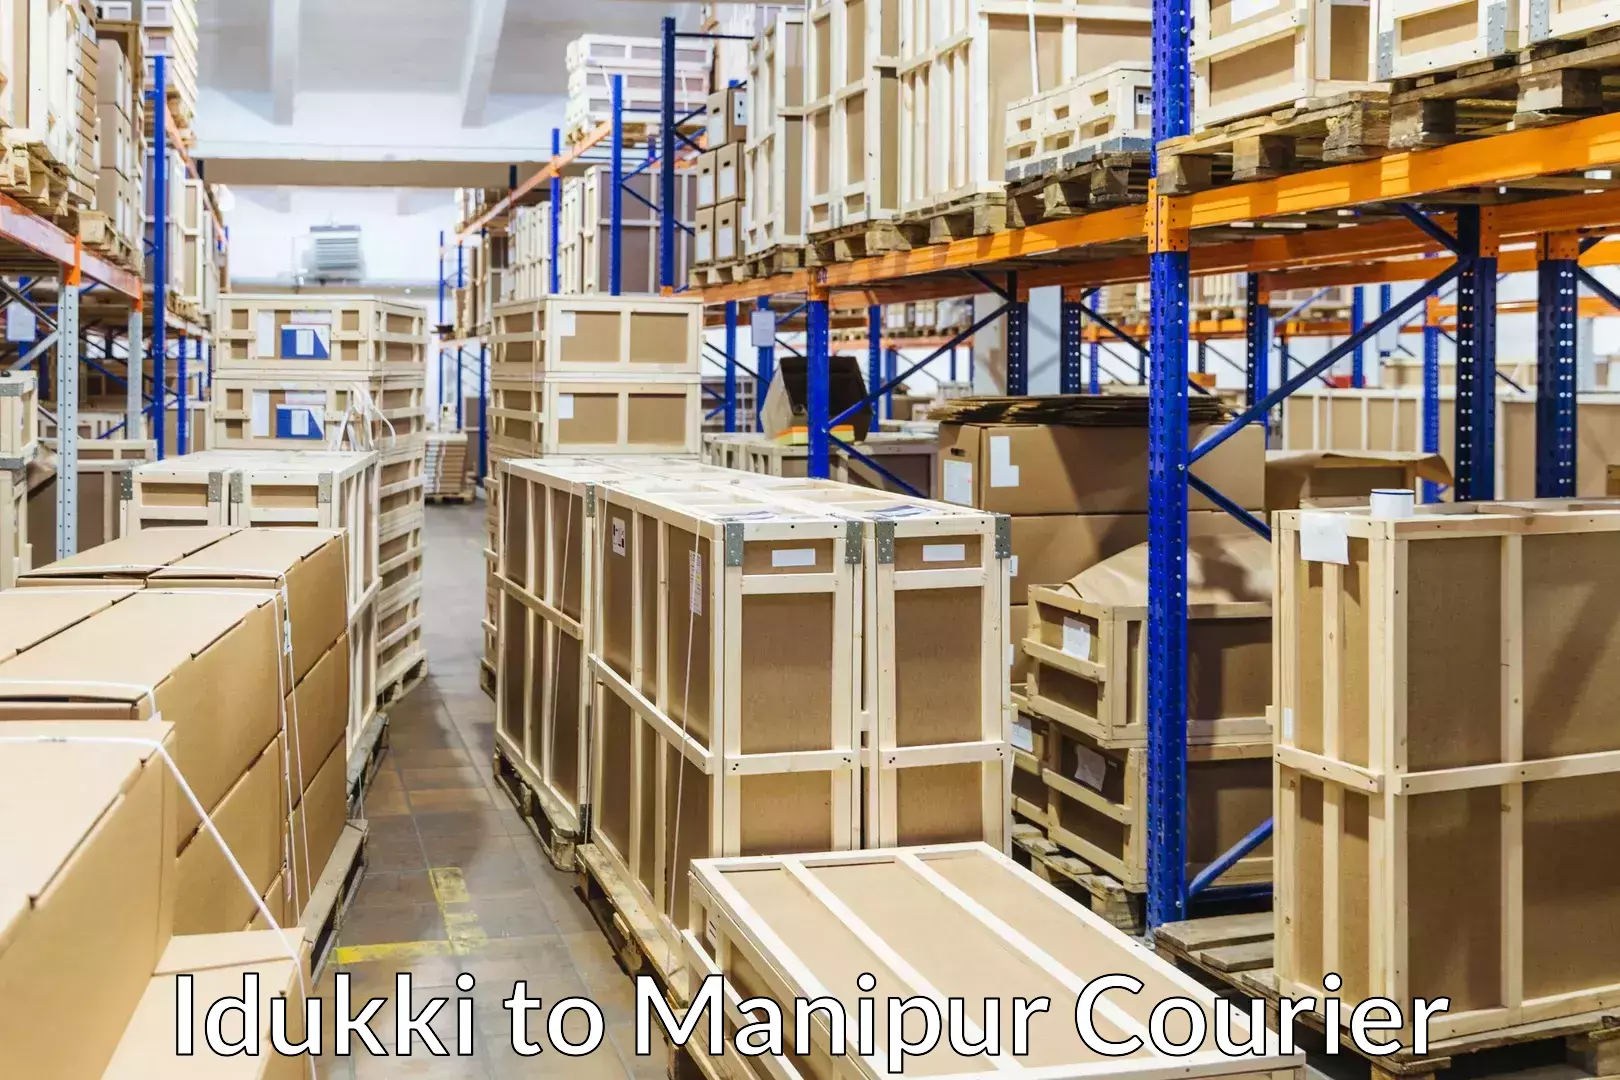 Stress-free moving Idukki to Manipur